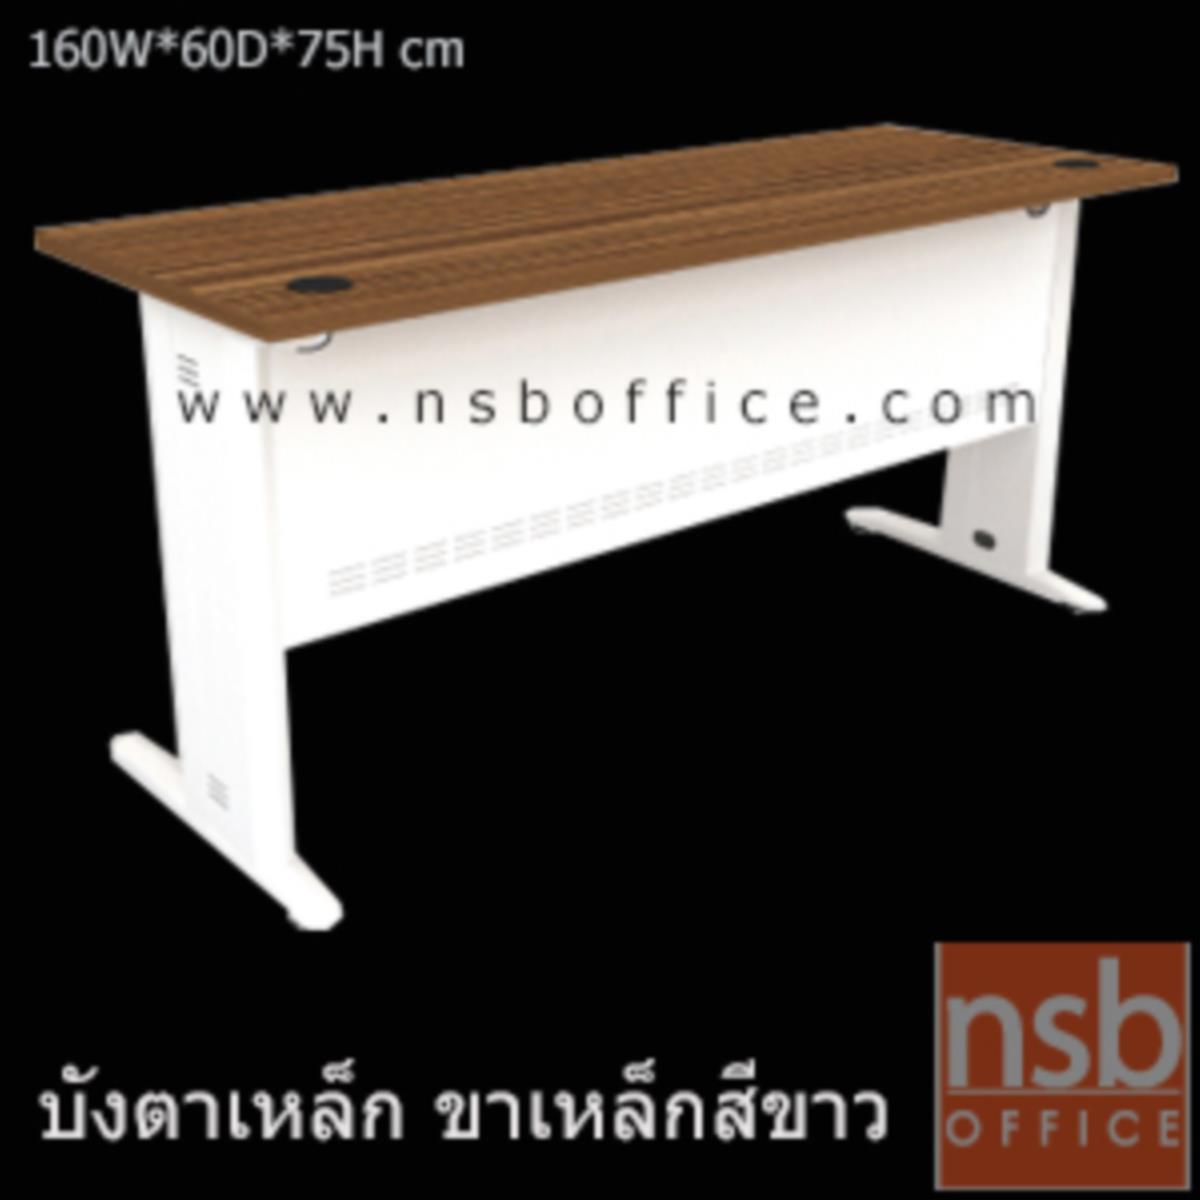 โต๊ะทำงาน รุ่น Rosie (โรซี่) ขนาด 120W ,160W cm.  สีซีบราโน่-ขาว